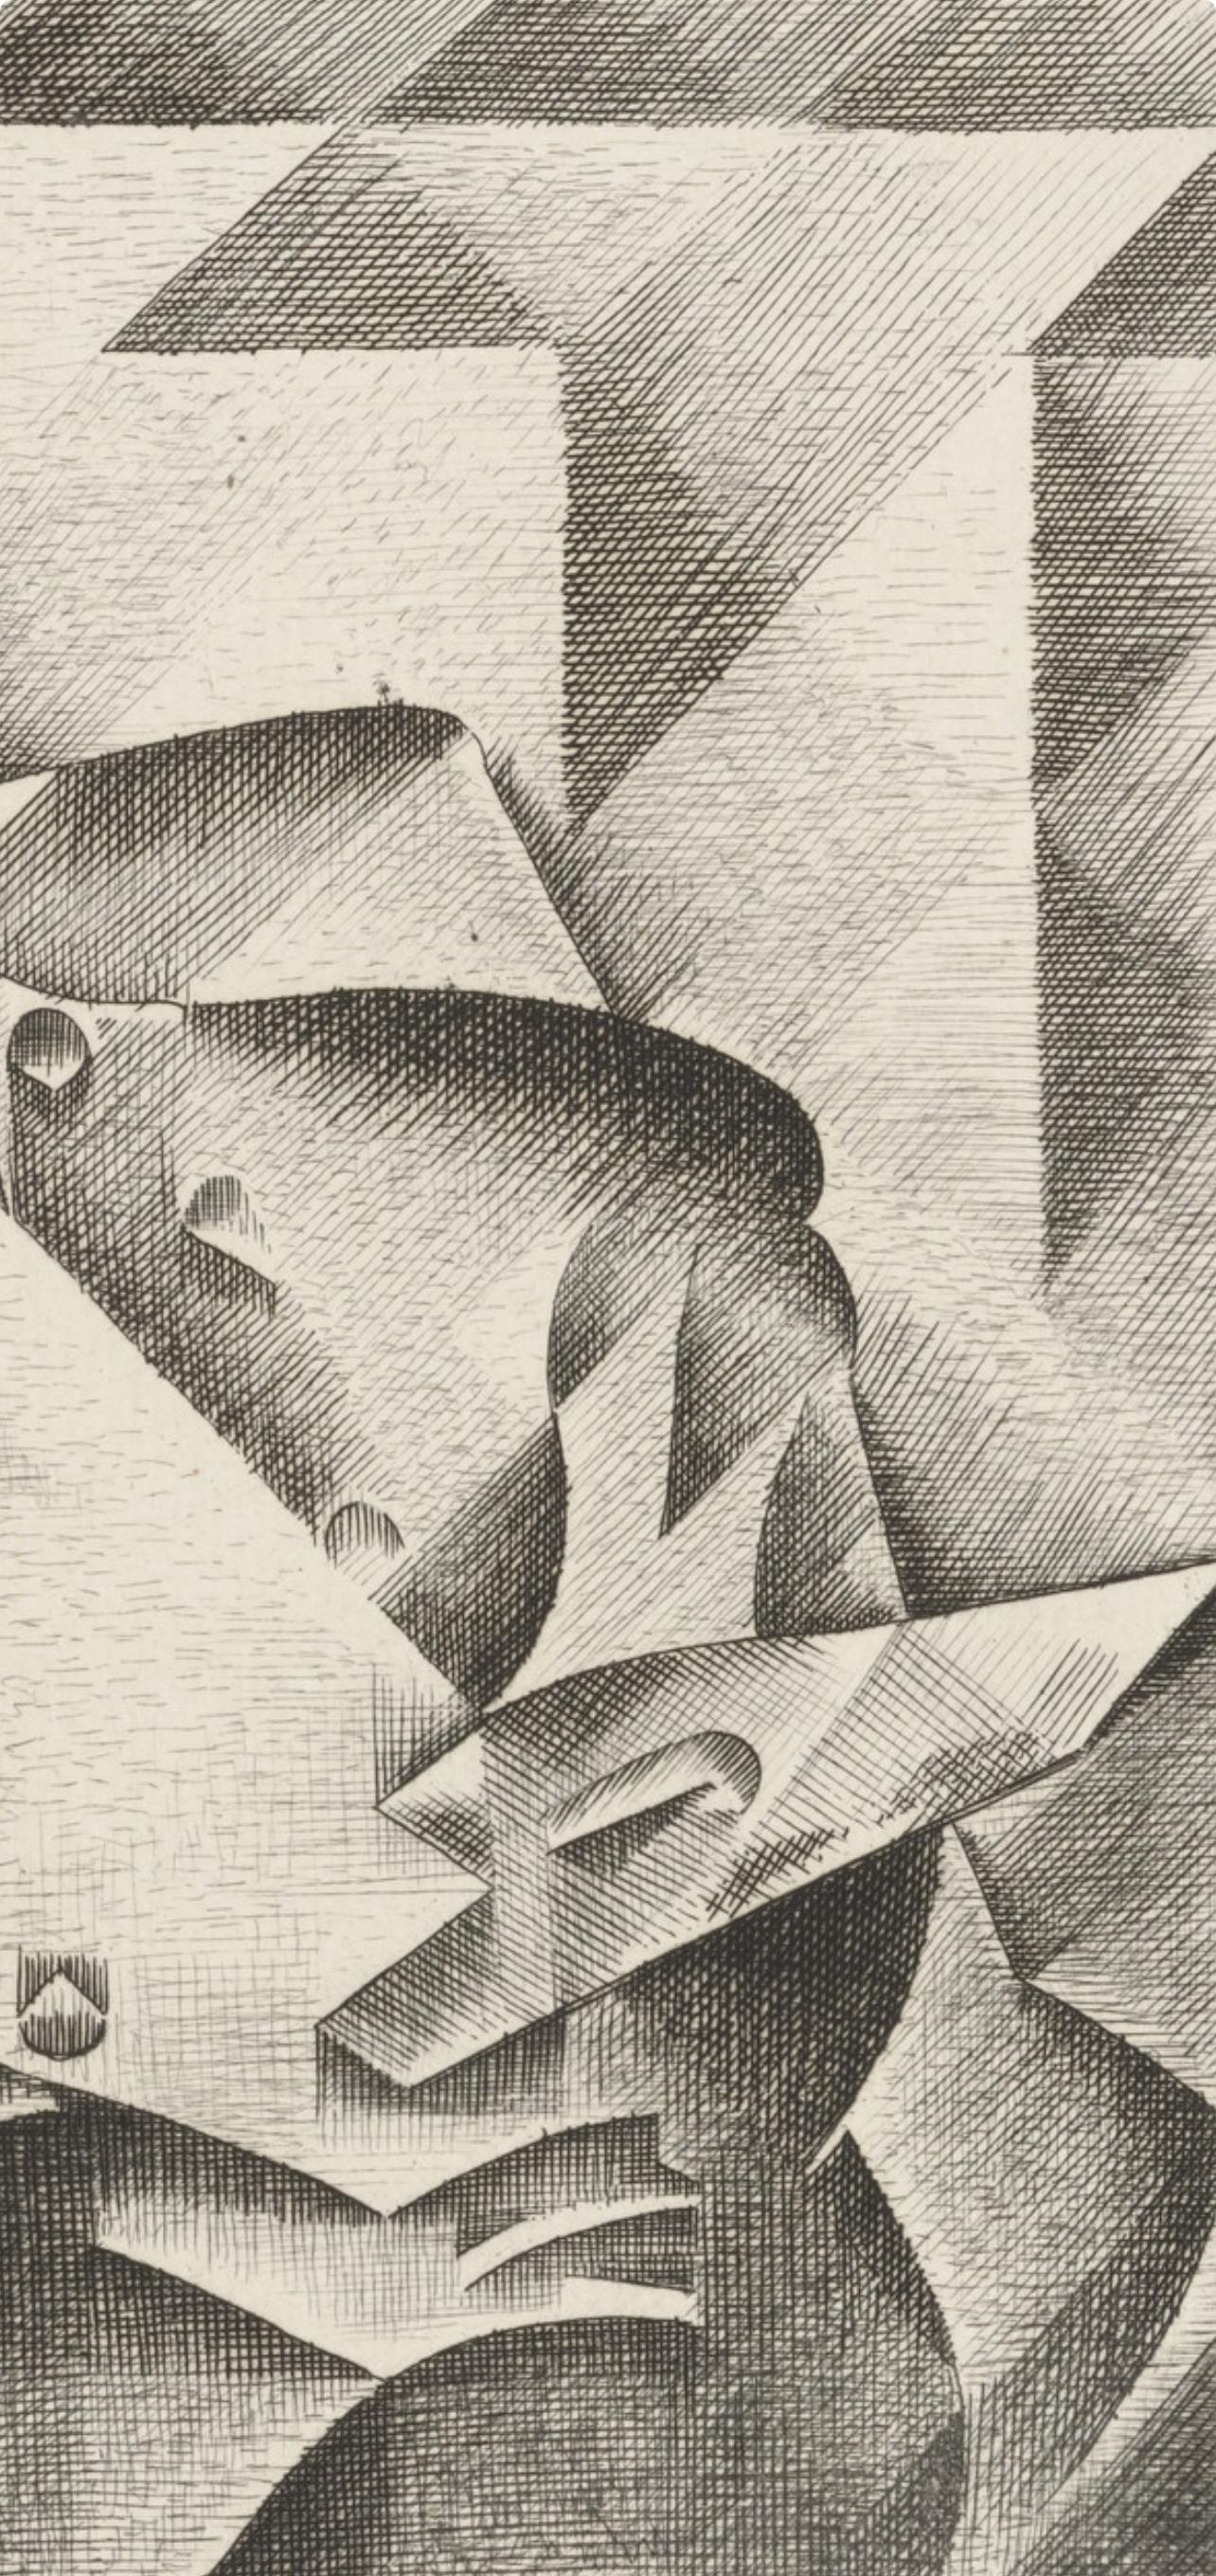 Gris, Composition, Du cubisme (after) - Modern Print by Juan Gris